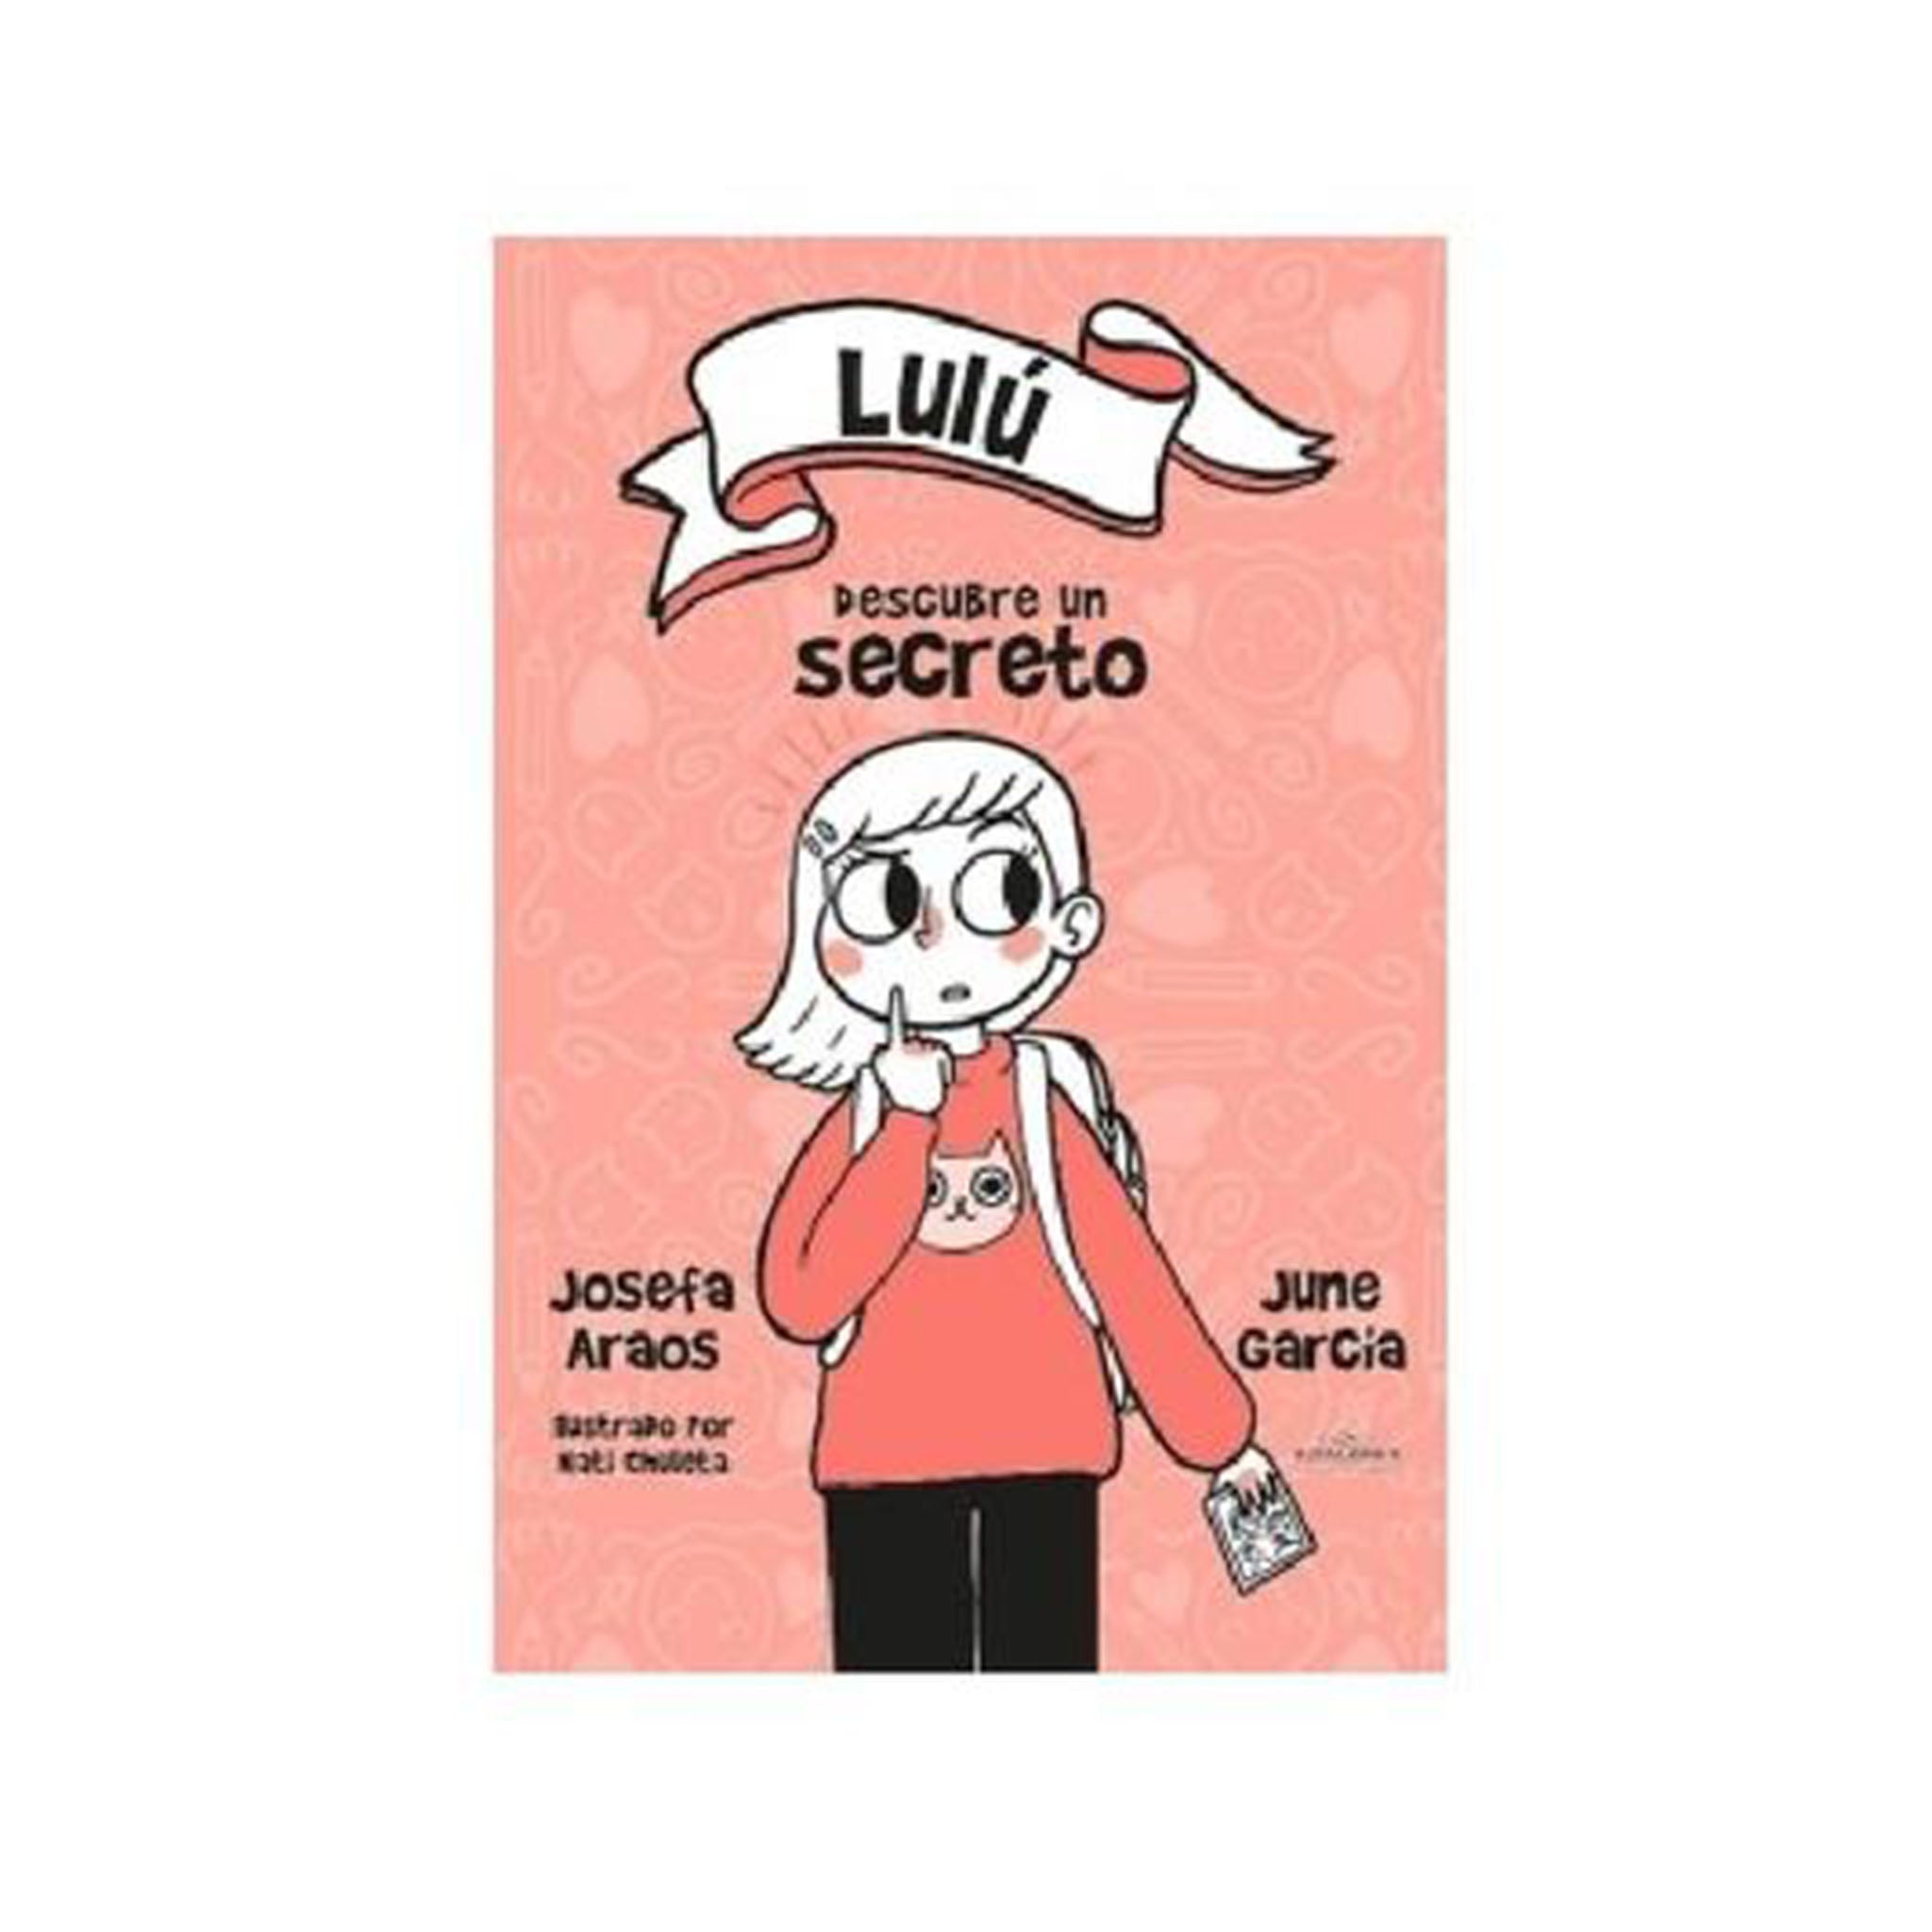 Lulú descubre un secreto